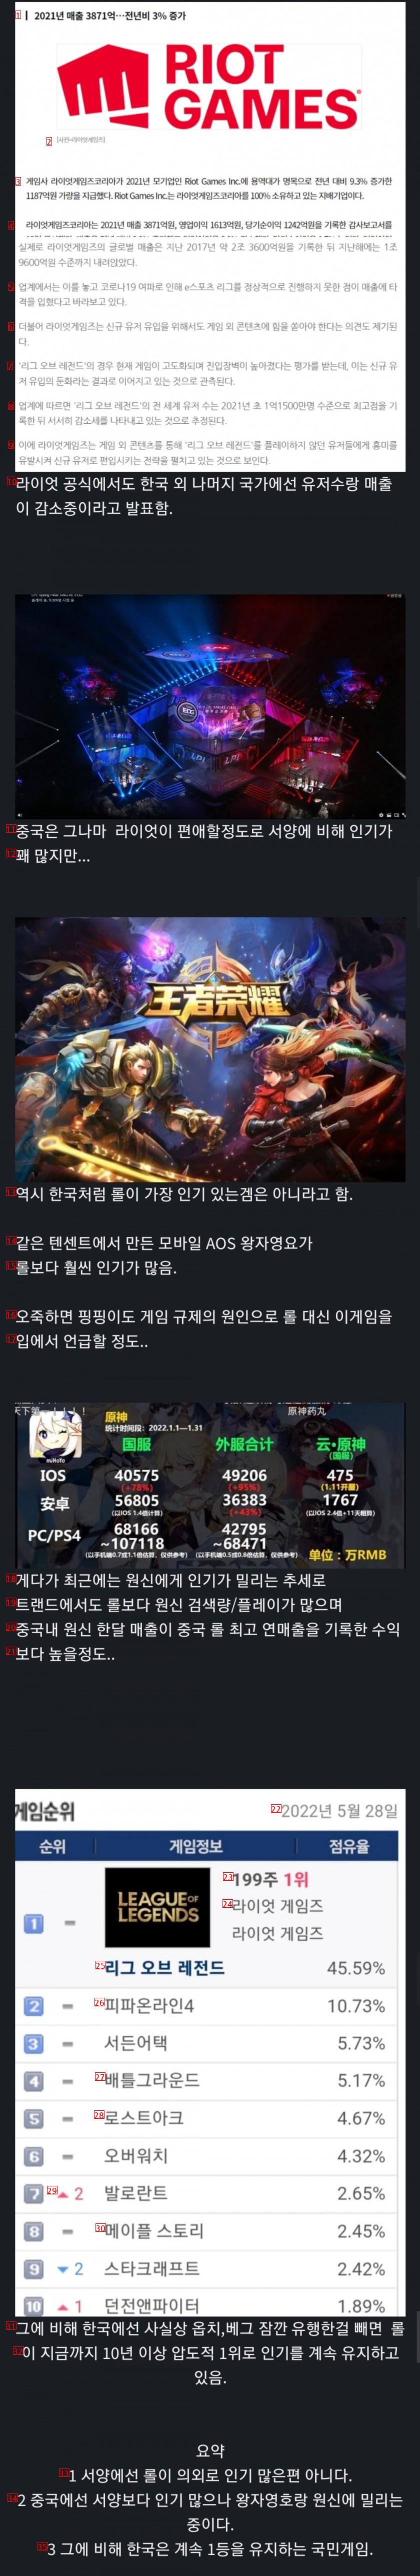 의외로 한국에서만 인기가 많은 게임